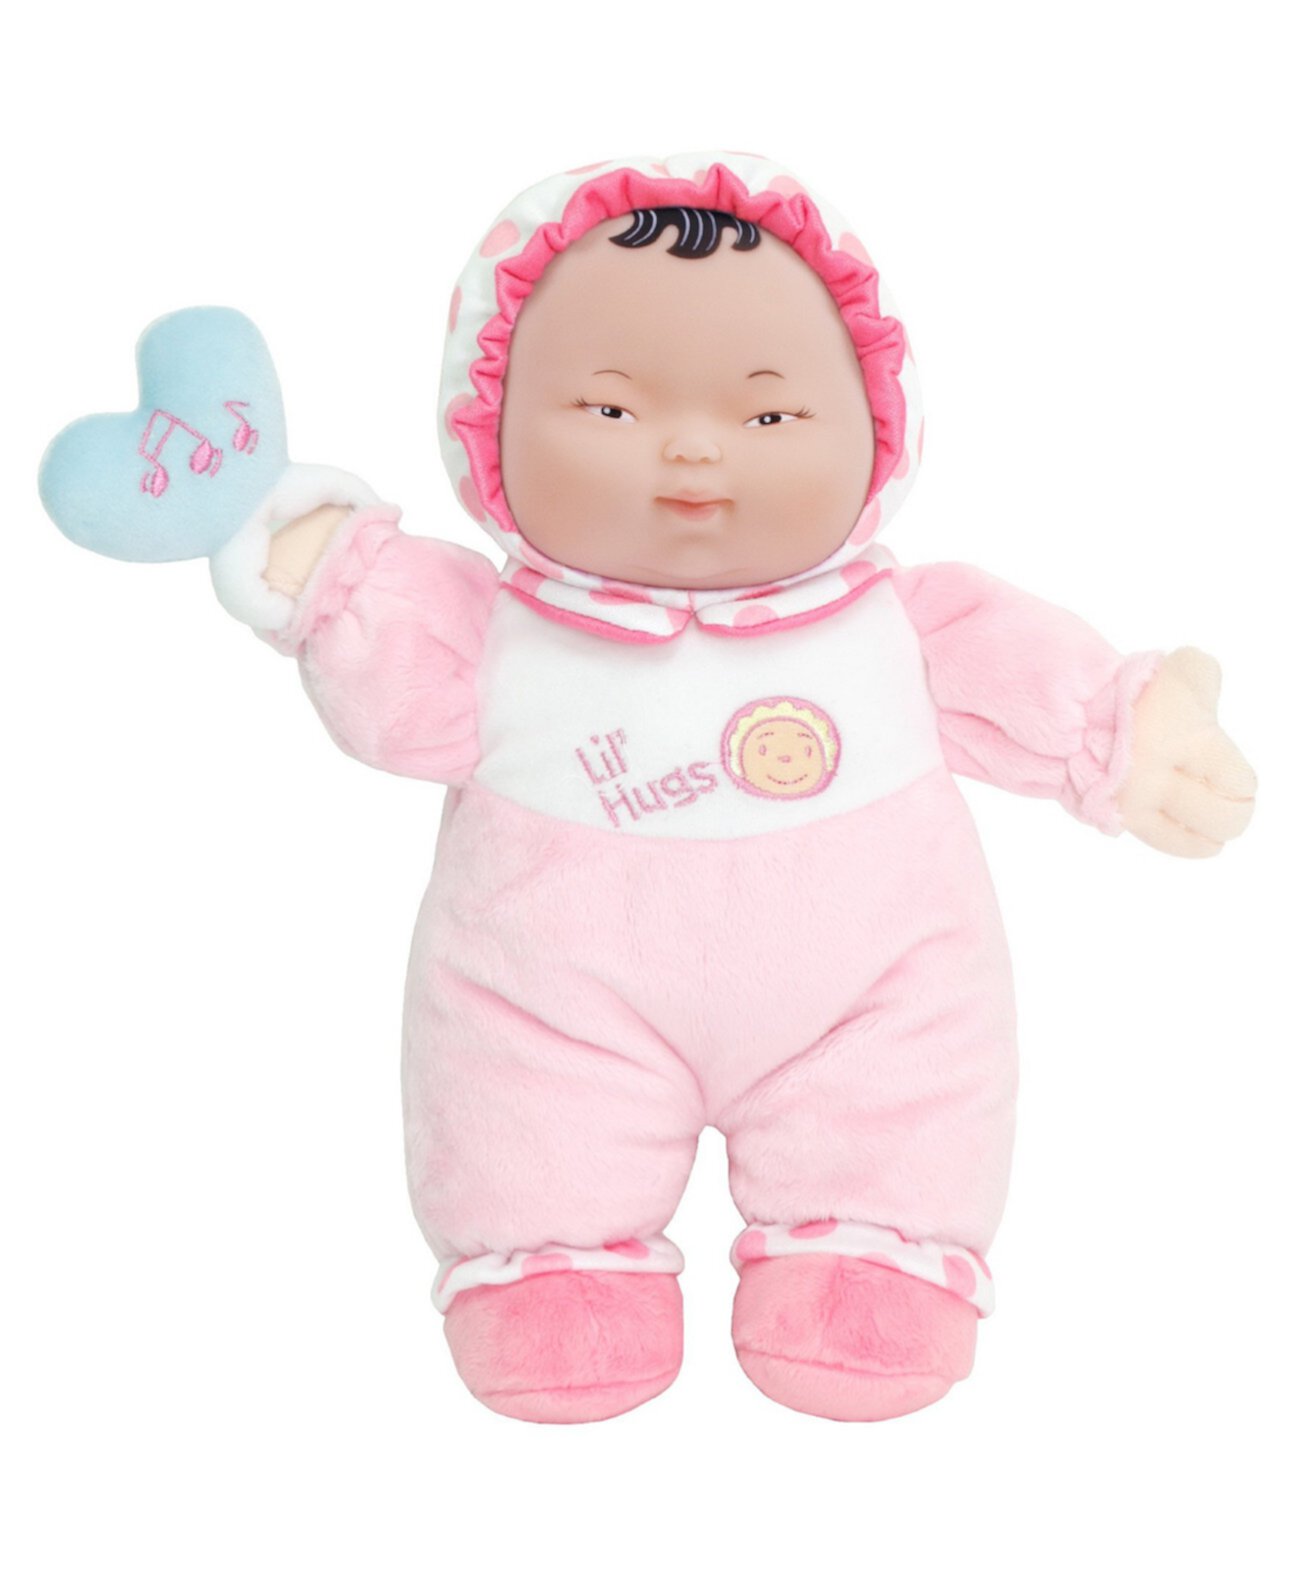 Lil 'Hugs 12 "Первая кукла вашего малыша, азиатские возрасты 0+ JC Toys